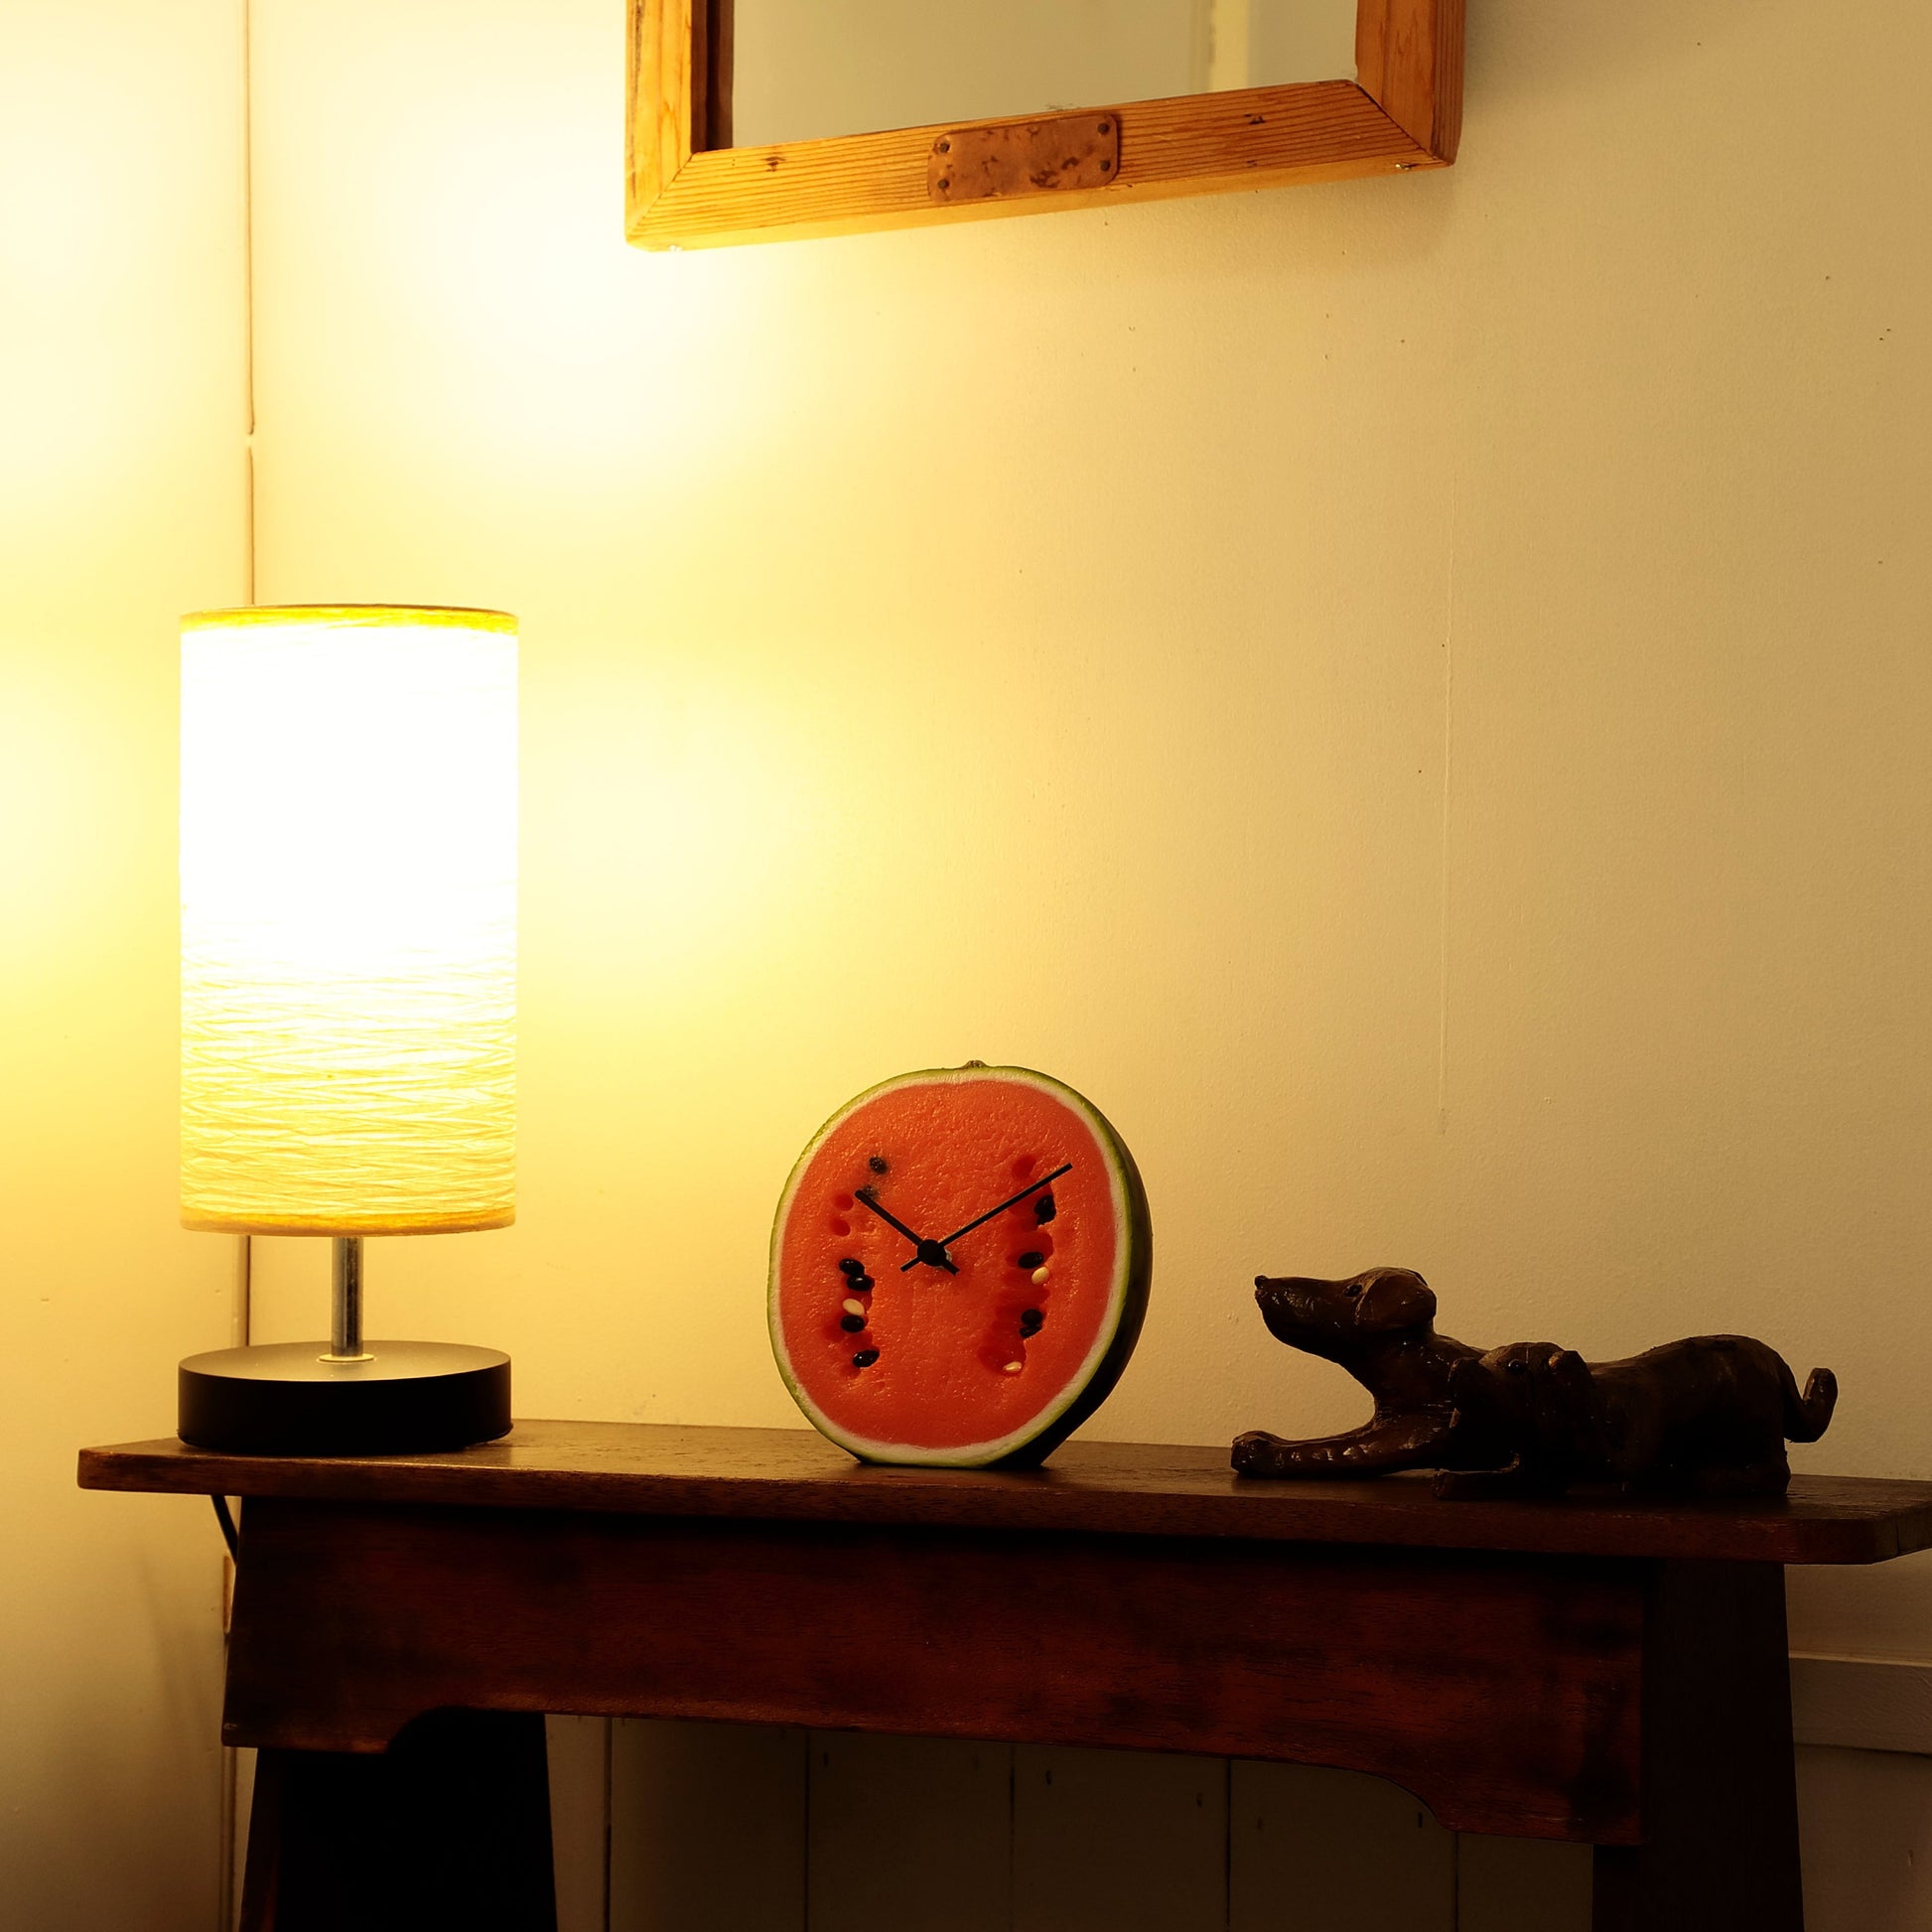 これは元祖食品サンプル屋「Replica Food Clock スイカ 」の夜の部屋に置いたイメージ写真です。